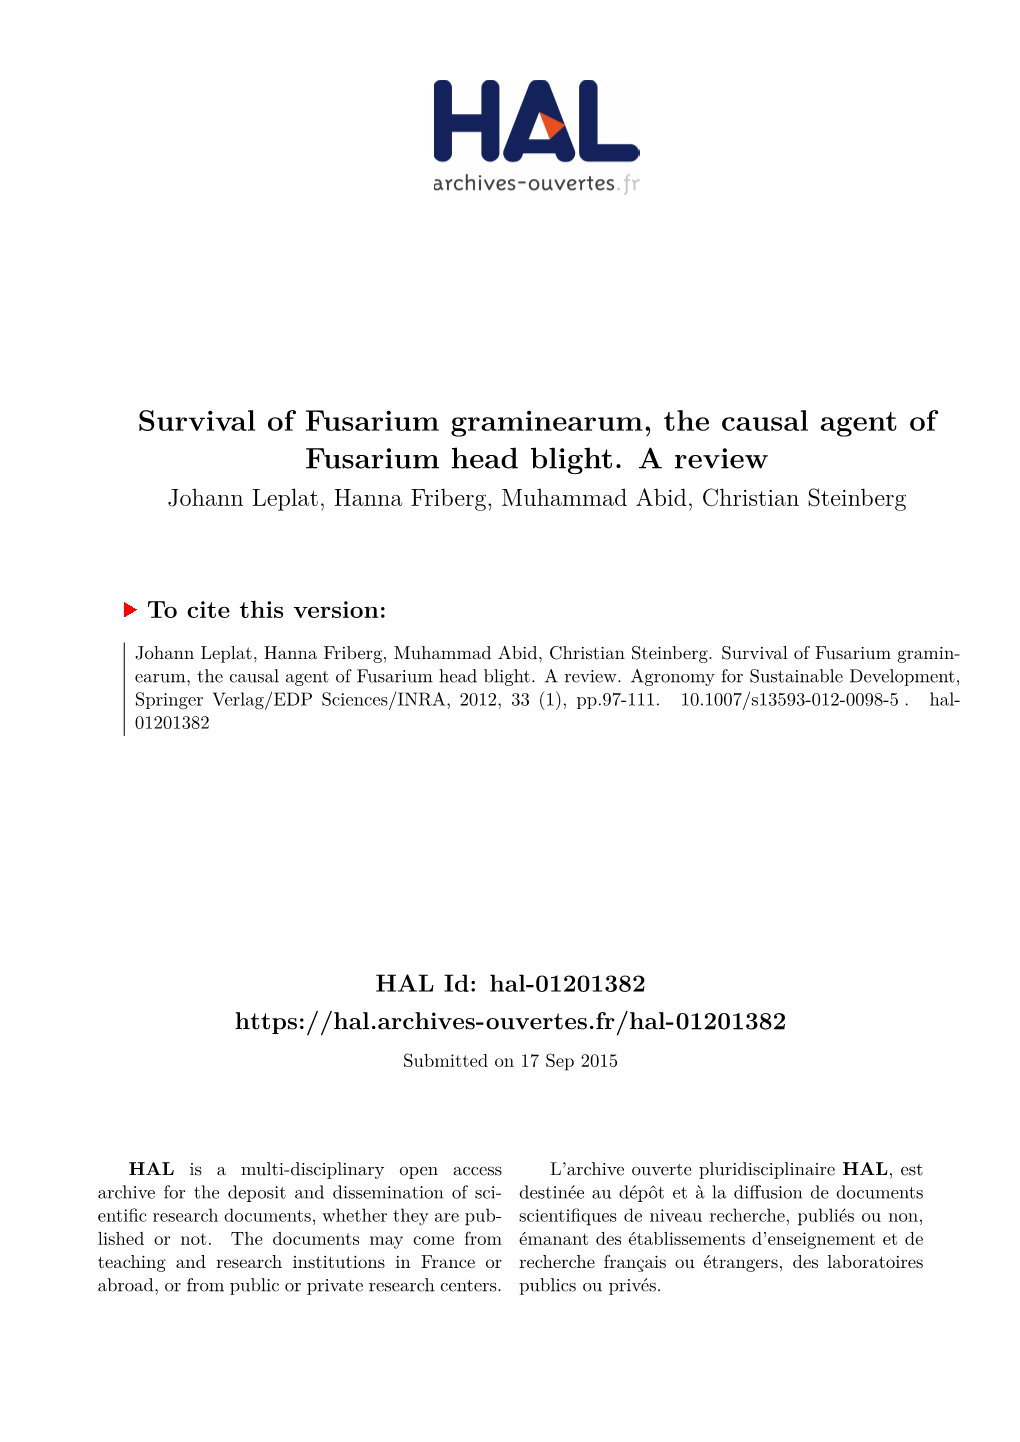 Survival of Fusarium Graminearum, the Causal Agent of Fusarium Head Blight